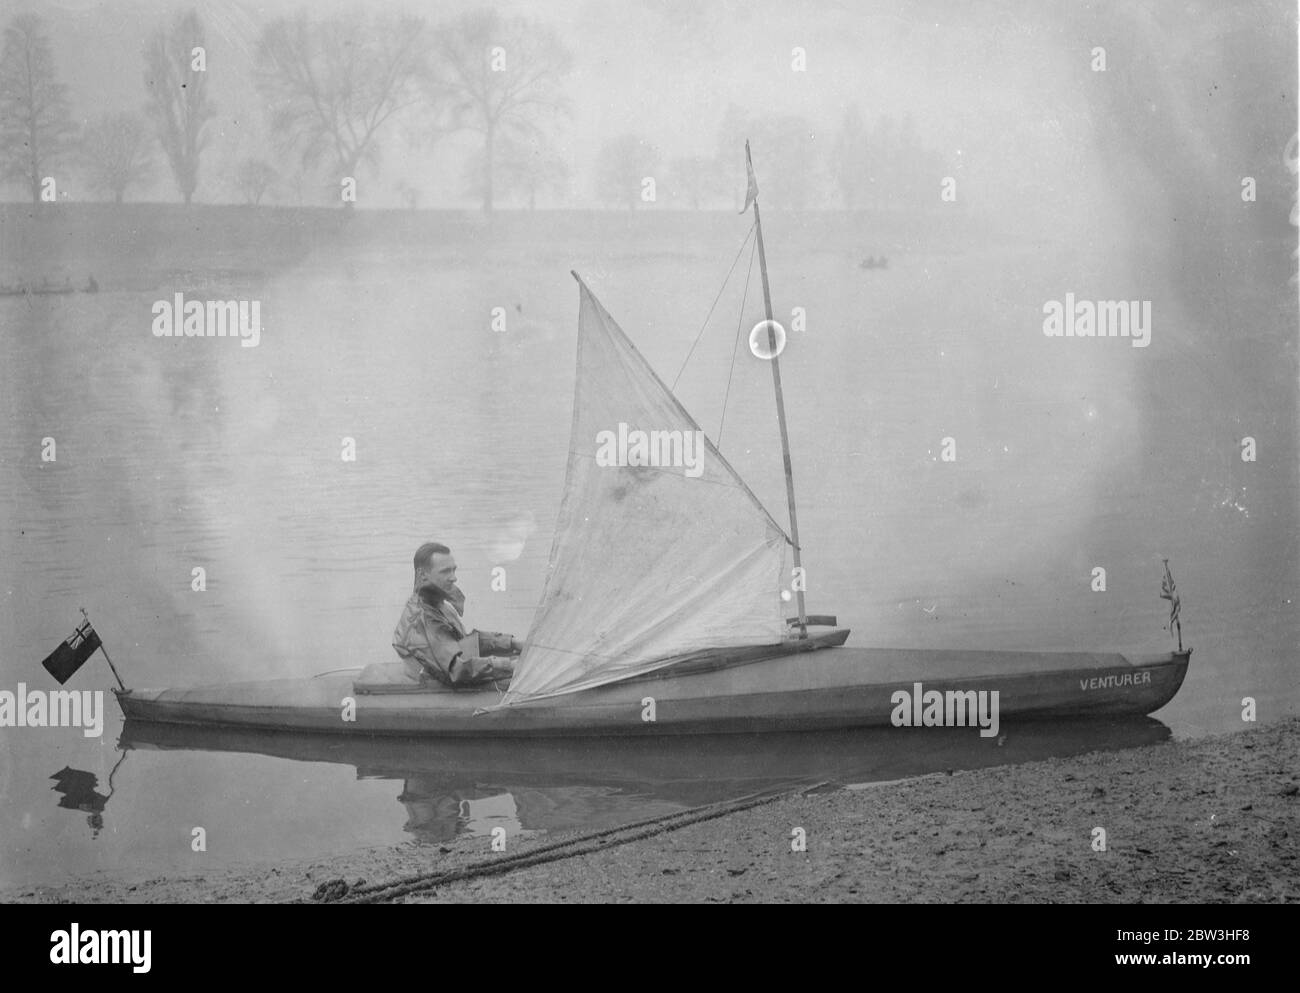 London Mann zu versuchen, Kanu überqueren von Atlantic , für Â£5,000 Preis . Foto zeigt: Herr Leslie William Fairnie , der eine Kanuüberquerung des Atlantiks vorschlägt , sein Kanu auf der Themse auszuprobieren . 10 Februar 1935 Stockfoto